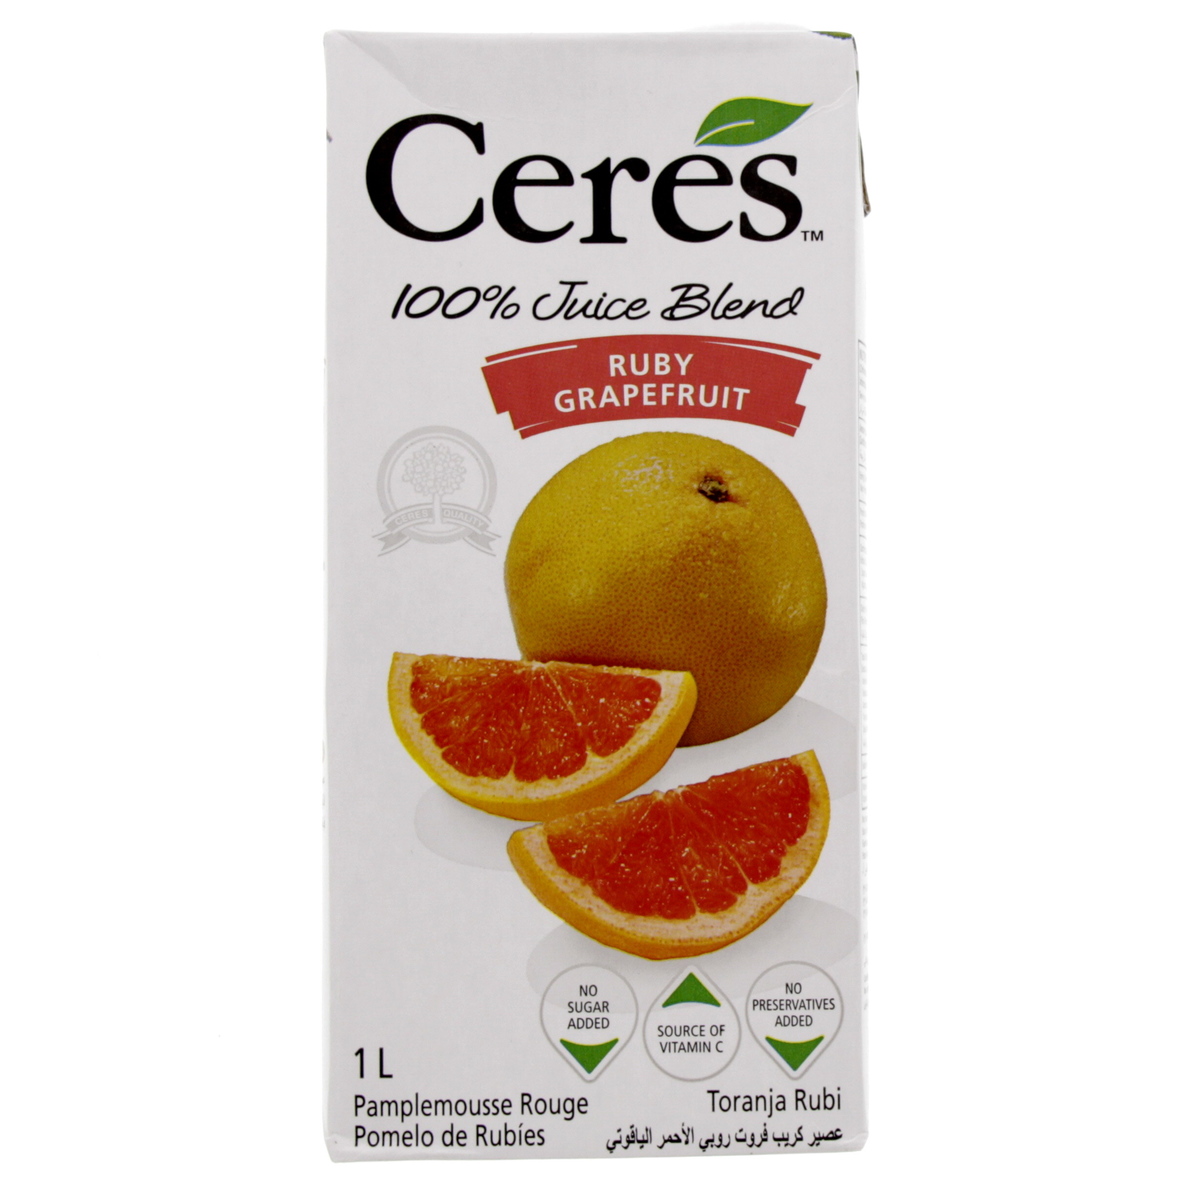 Ceres Ruby Grapefruit